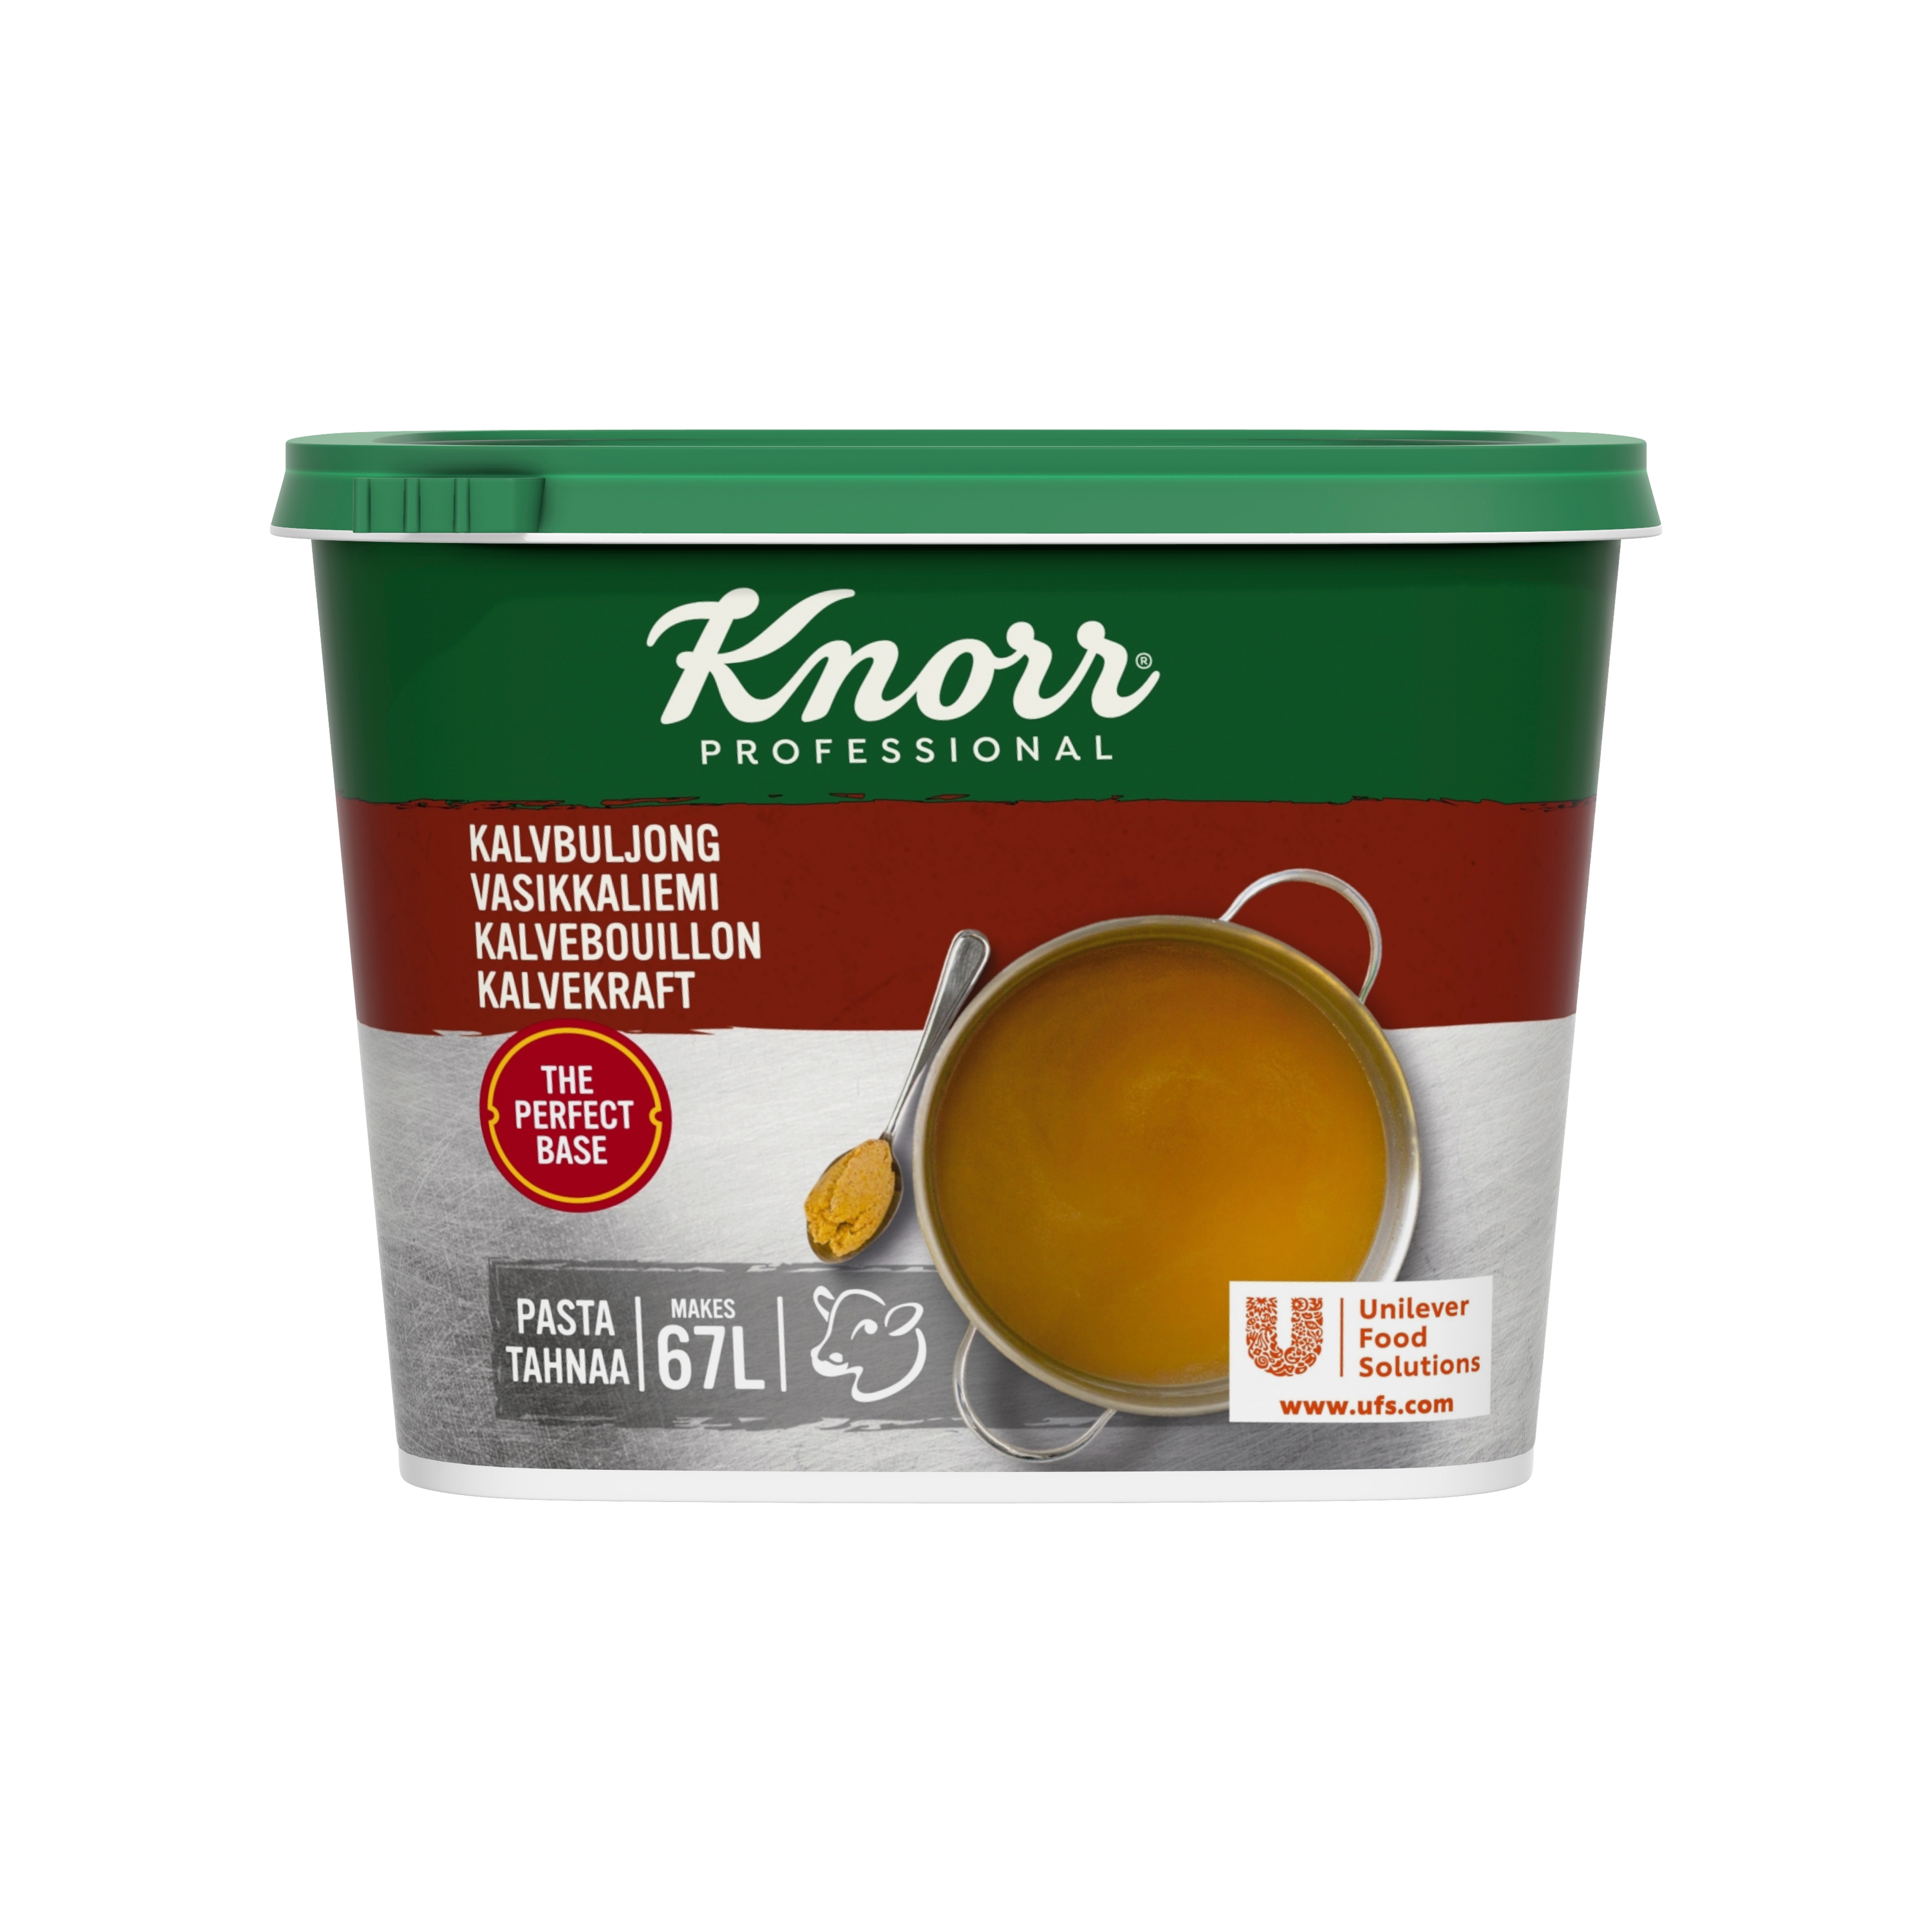 Knorr Kalvbuljong, pasta 2 x 1 kg - 